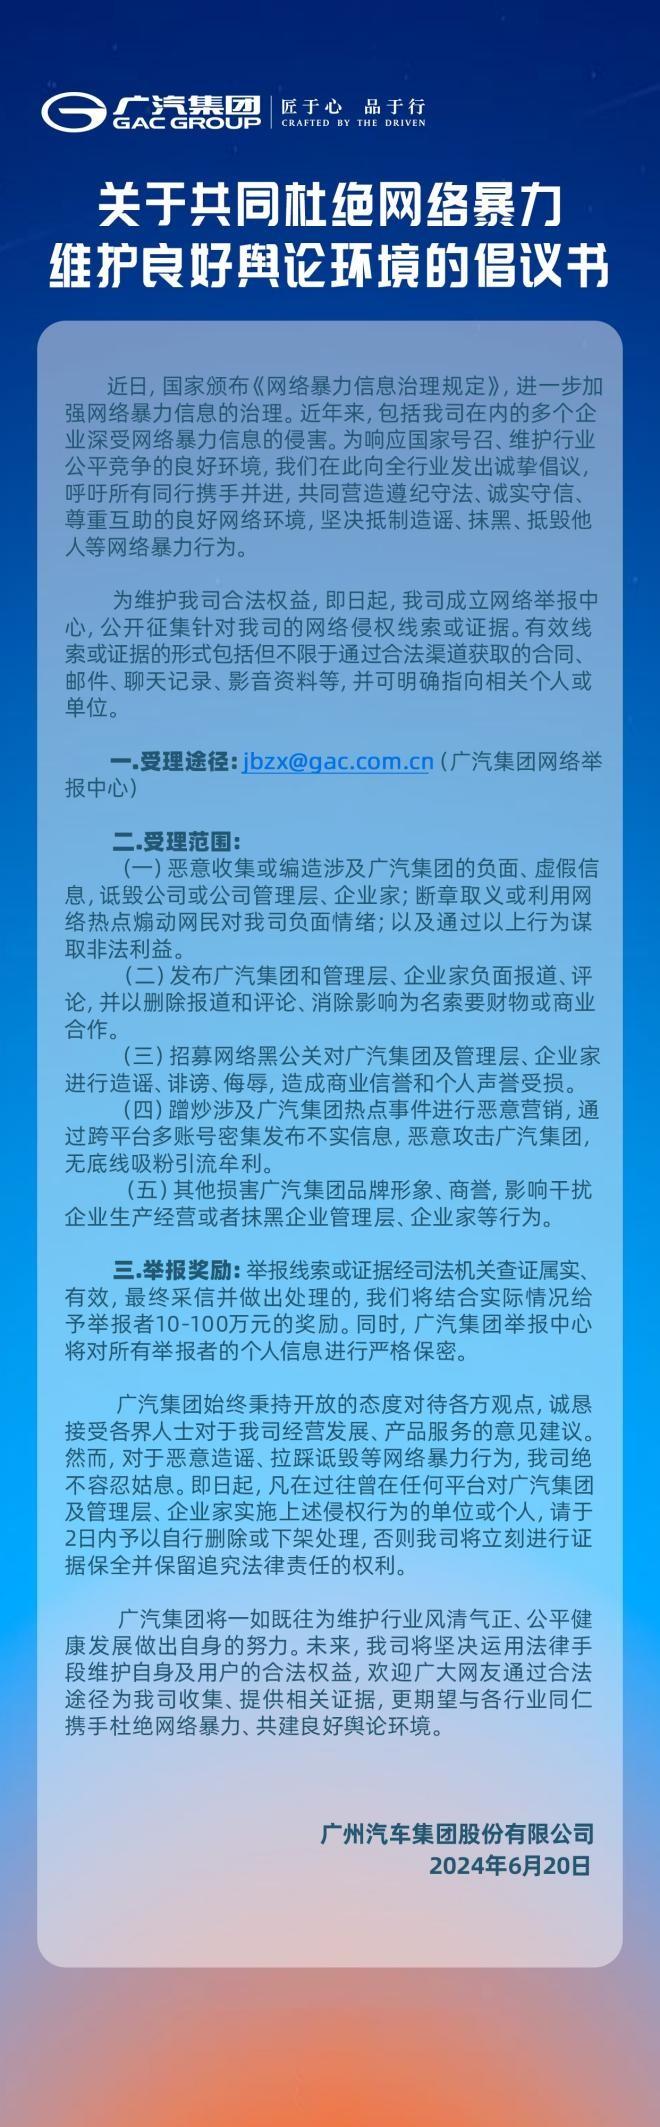 广汽集团成立网络举报中心，坚决抵制网络暴力行为！